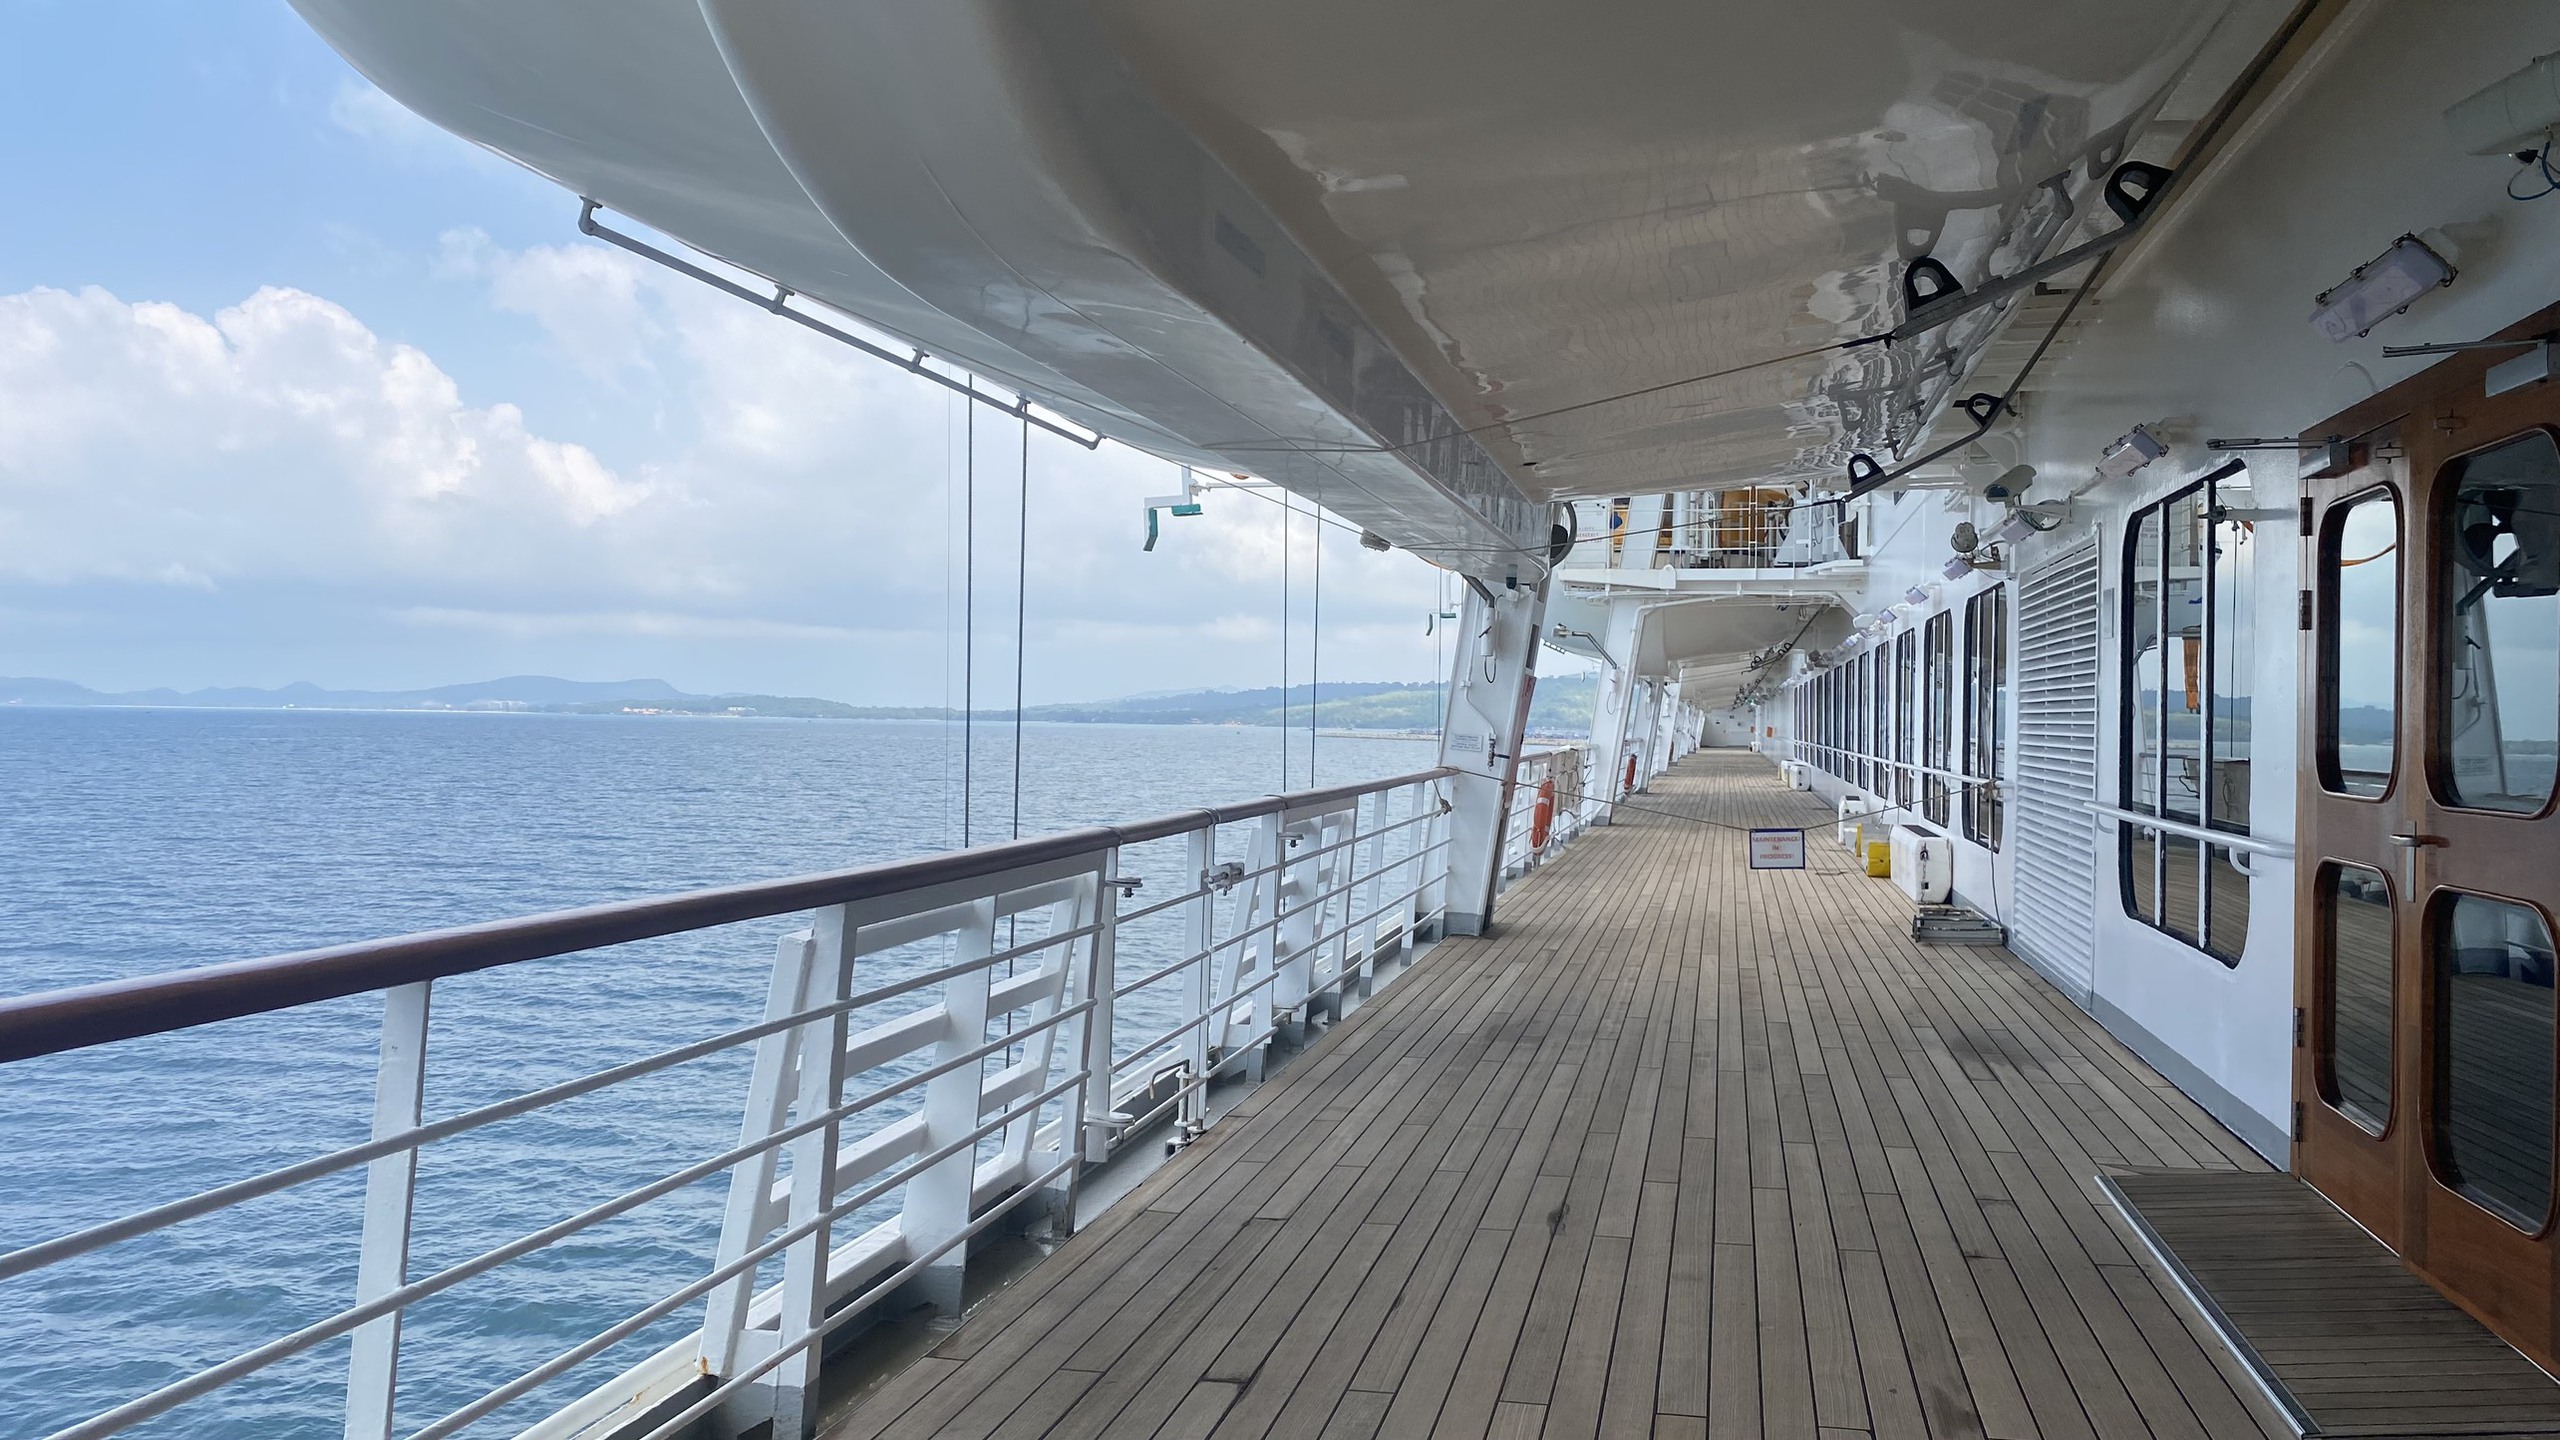 Bên trong du thuyền 5 sao chở hơn 1.100 khách lần đầu đến Phú Quốc- Ảnh 6.